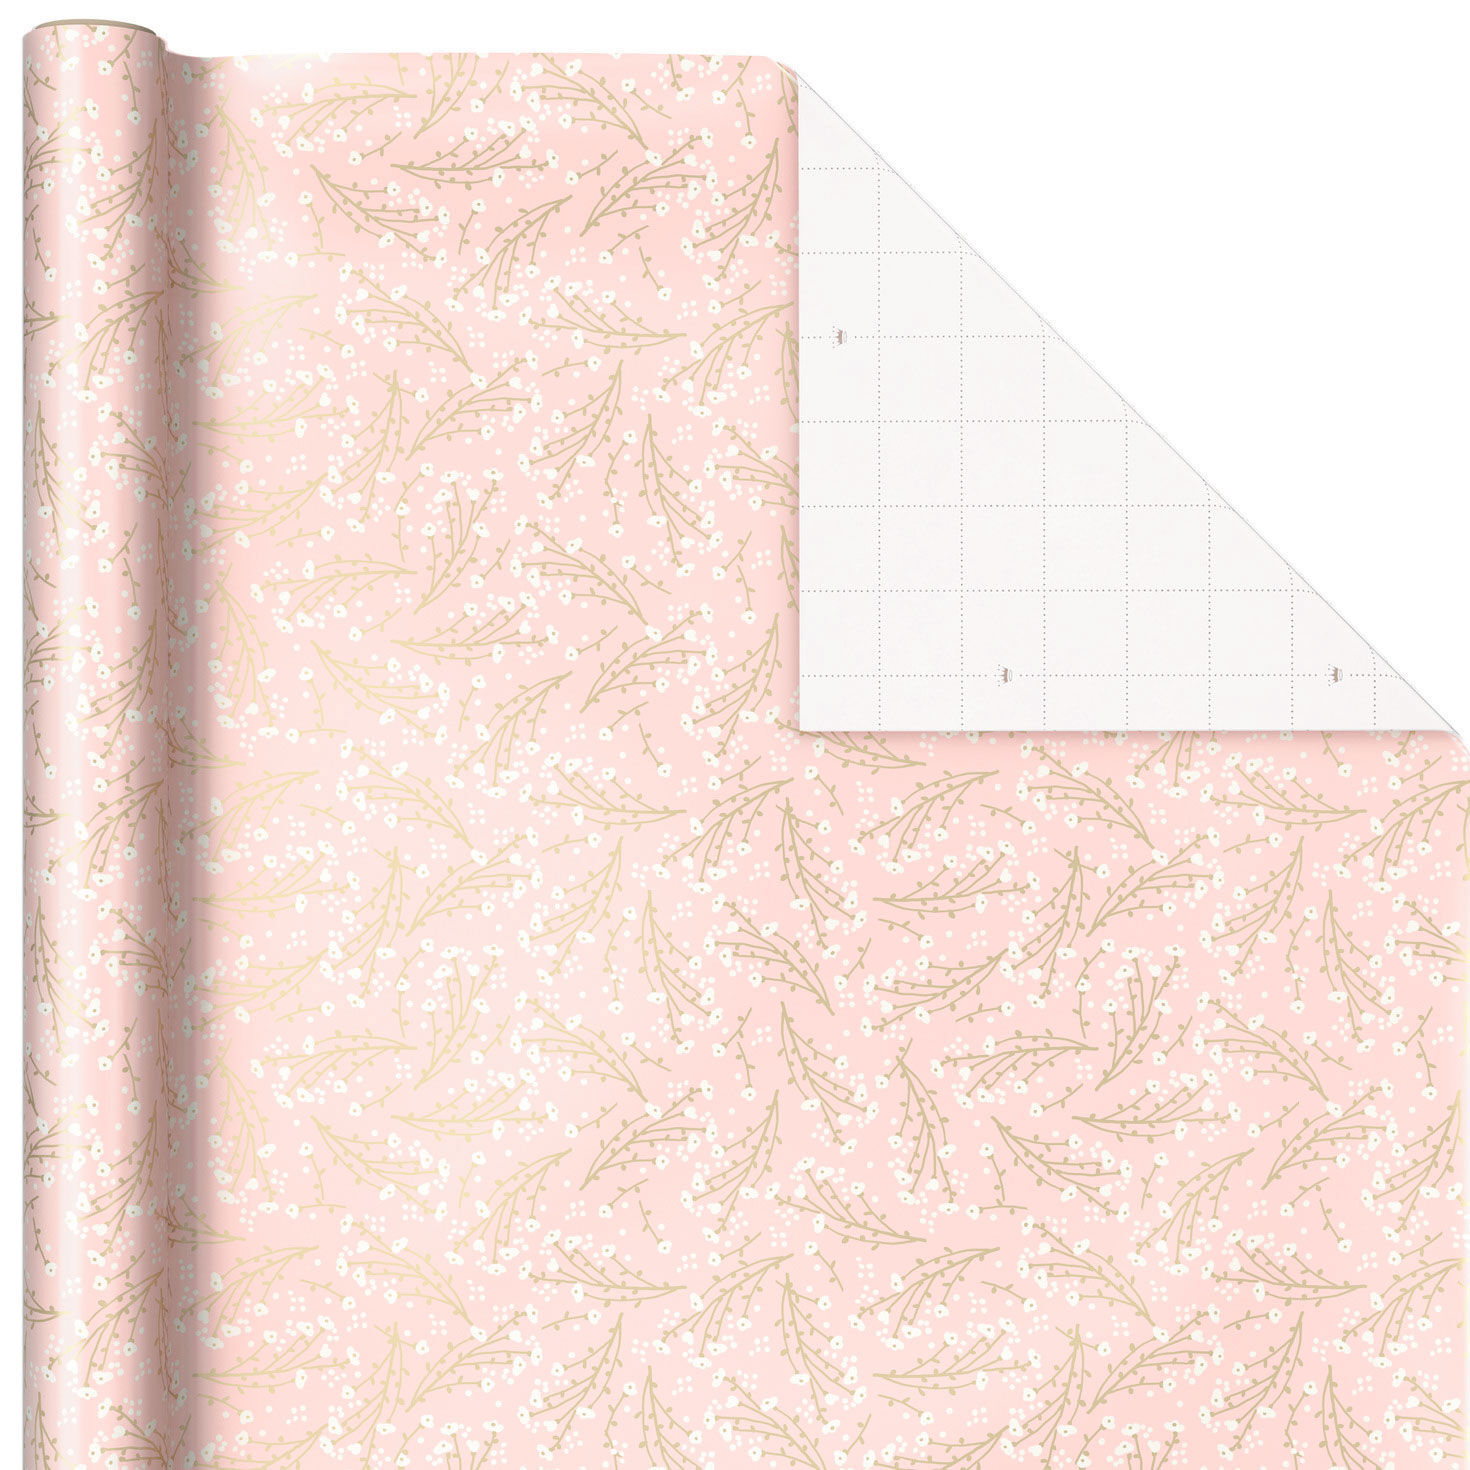 Hot Pink With Gems Tissue Paper, 6 sheets - Tissue - Hallmark